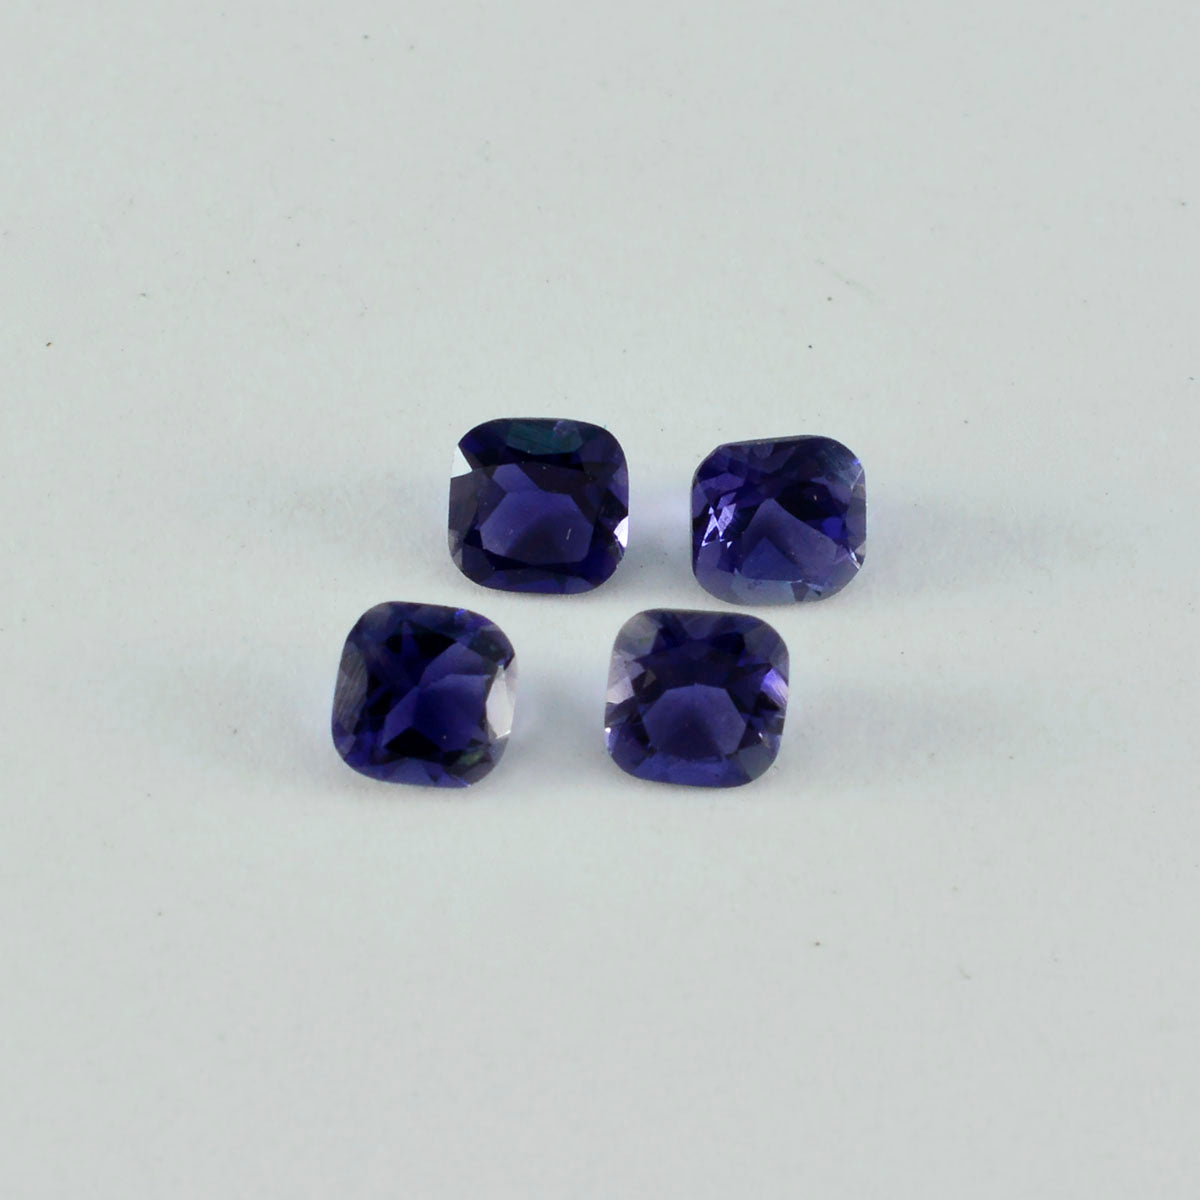 riyogems 1 pieza de iolita azul facetada de 6x6 mm con forma de cojín, piedra preciosa suelta de excelente calidad